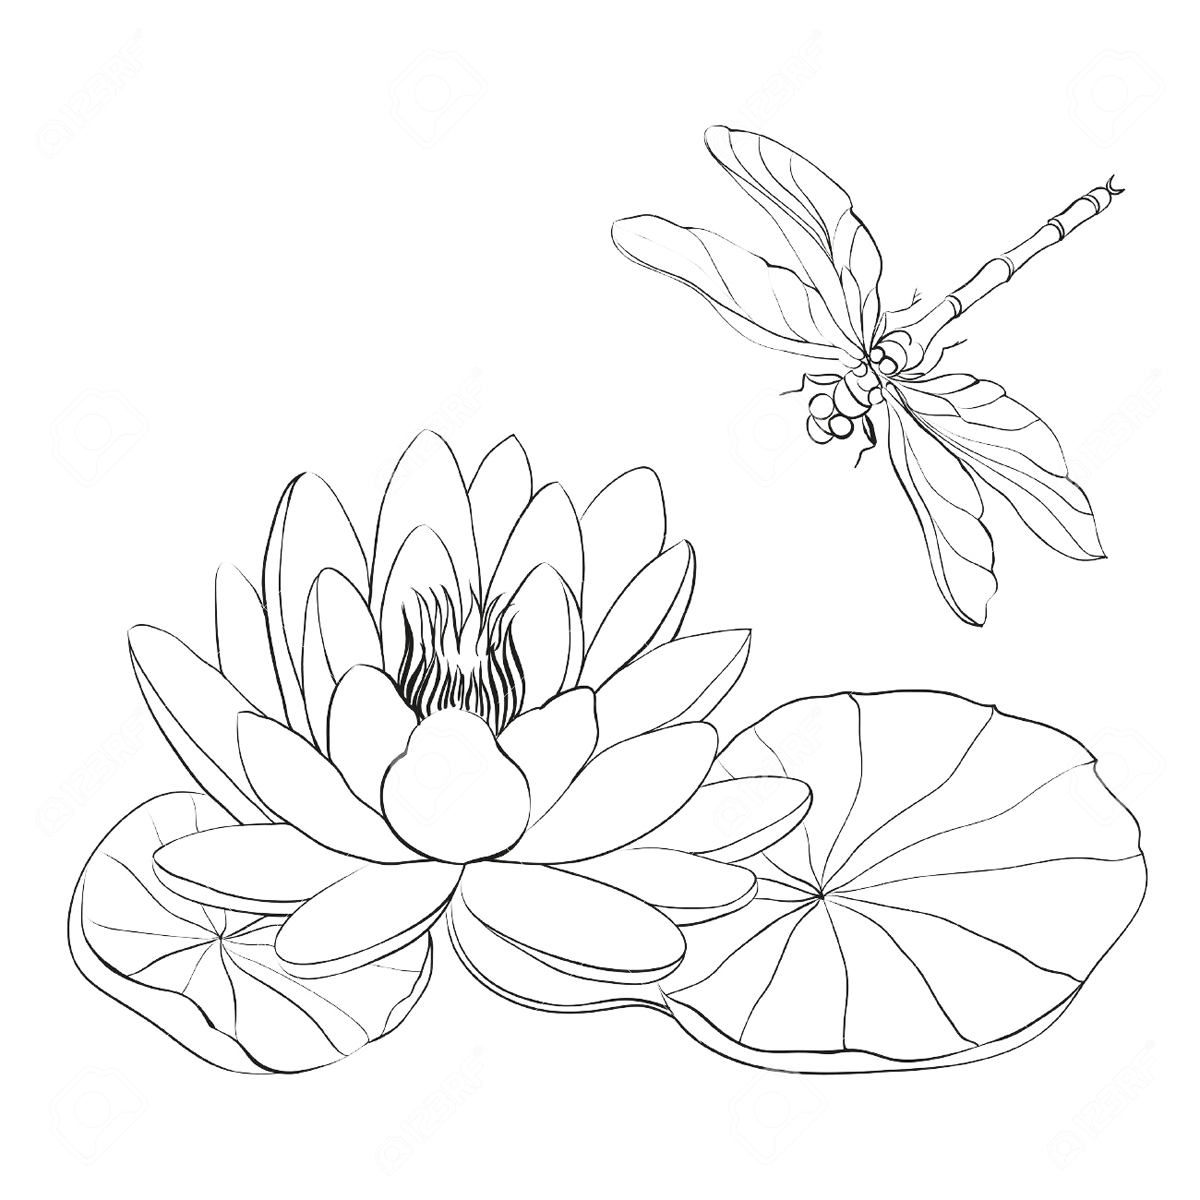 蜻蜓怎么画简单又漂亮 - 制作系手工网